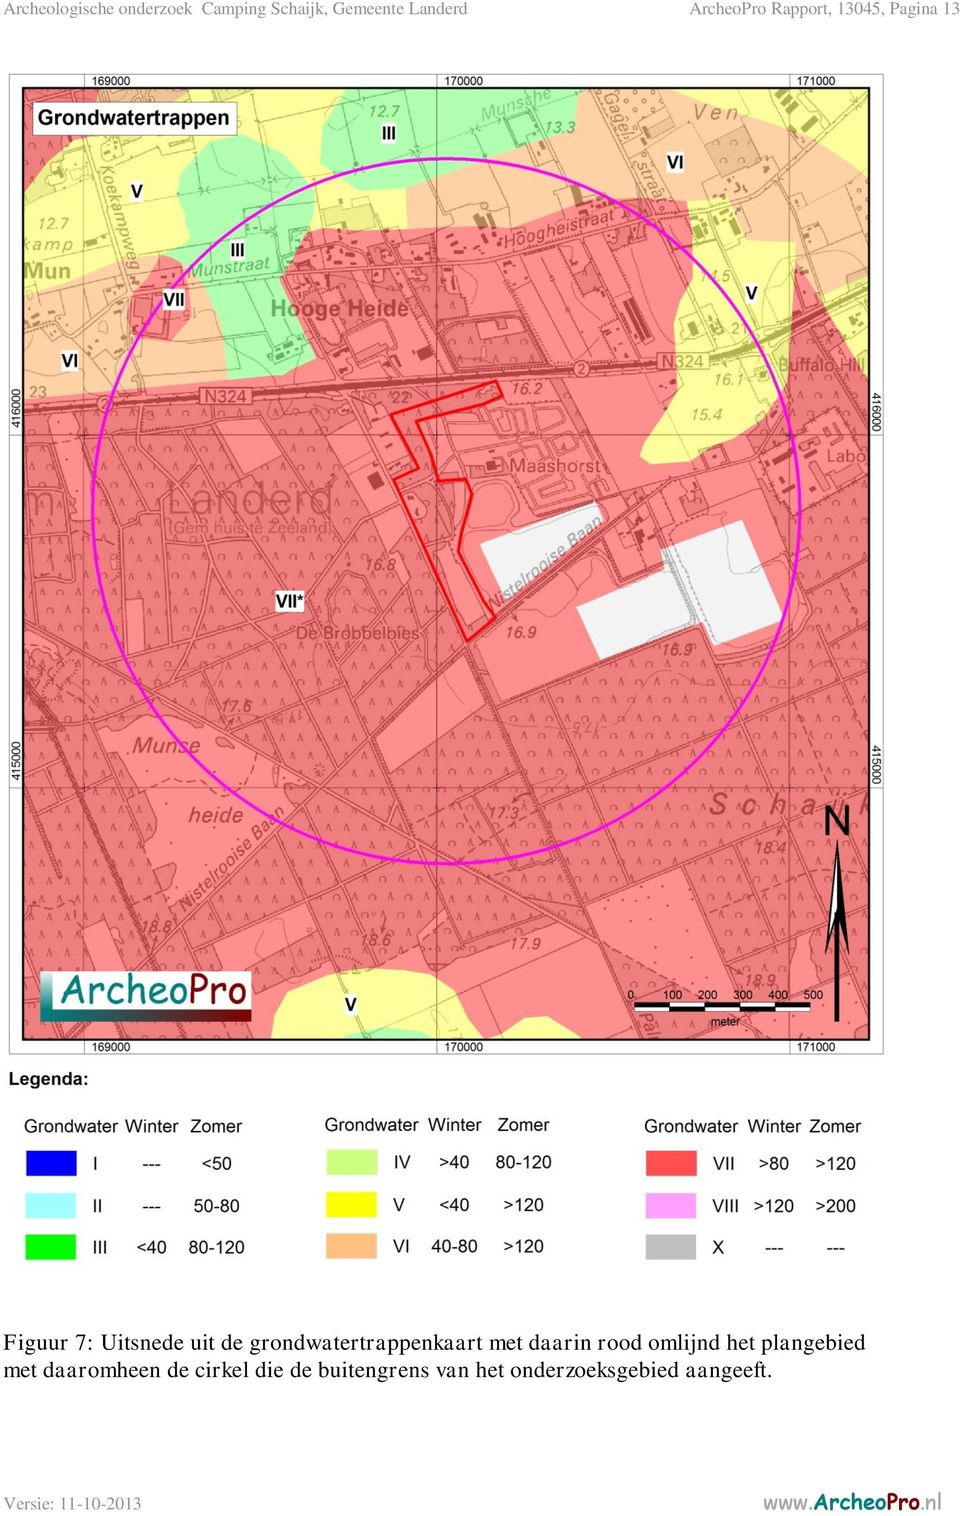 grondwatertrappenkaart met daarin rood omlijnd het plangebied met